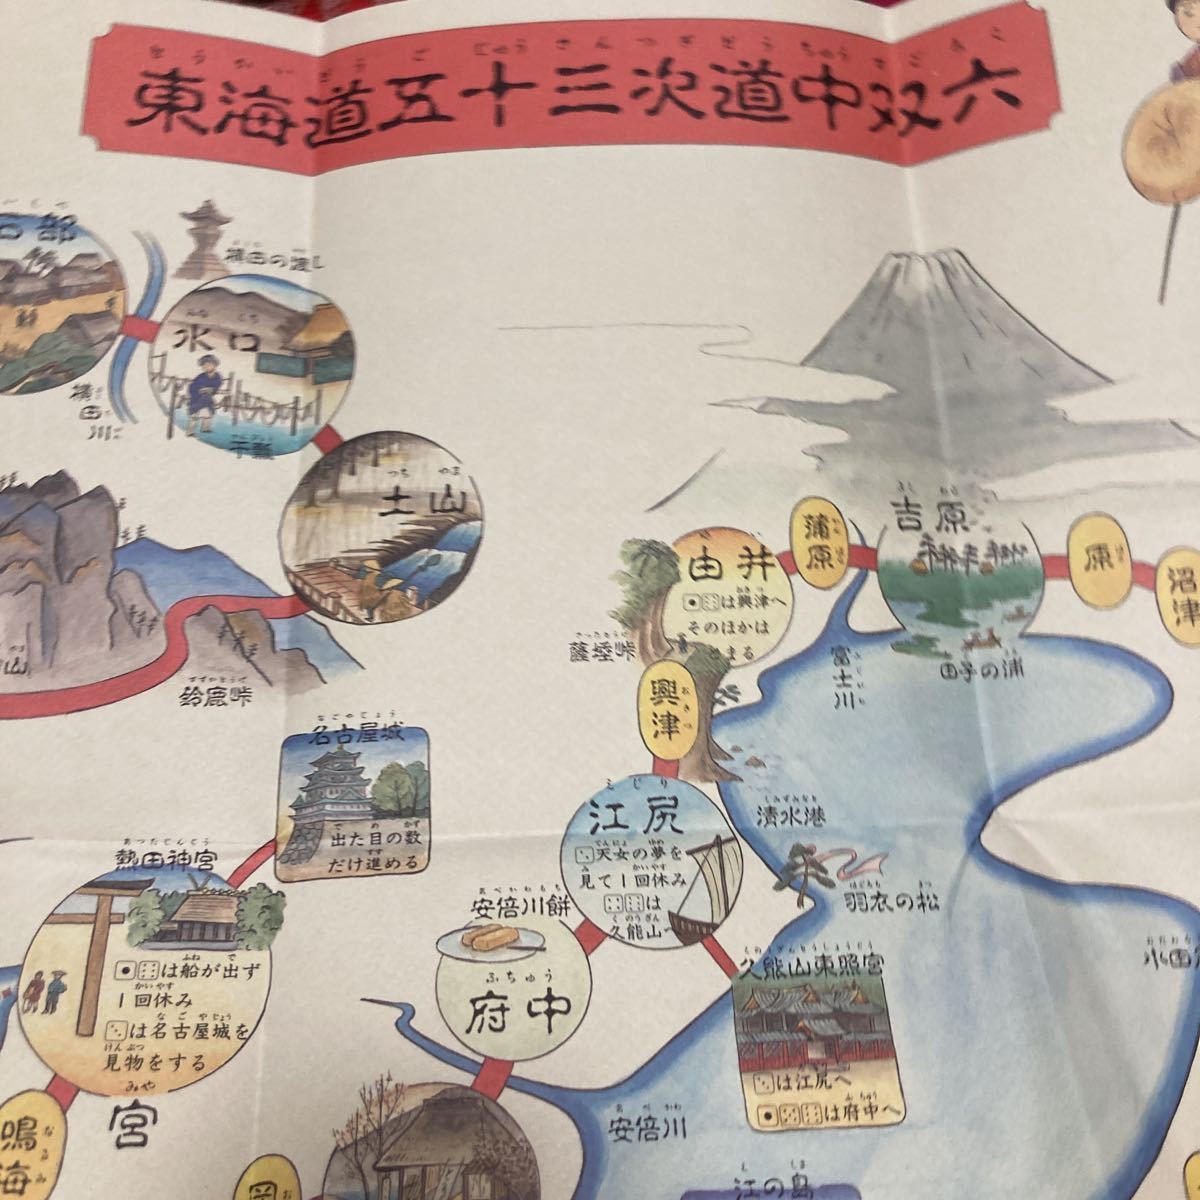 Artículo nuevo y sin usar Tokaido 53 Stations Dochu Sugoroku Publicado por el Museo de Historia de la ciudad de Otsu, cuadro, Ukiyo-e, imprimir, foto de lugar famoso